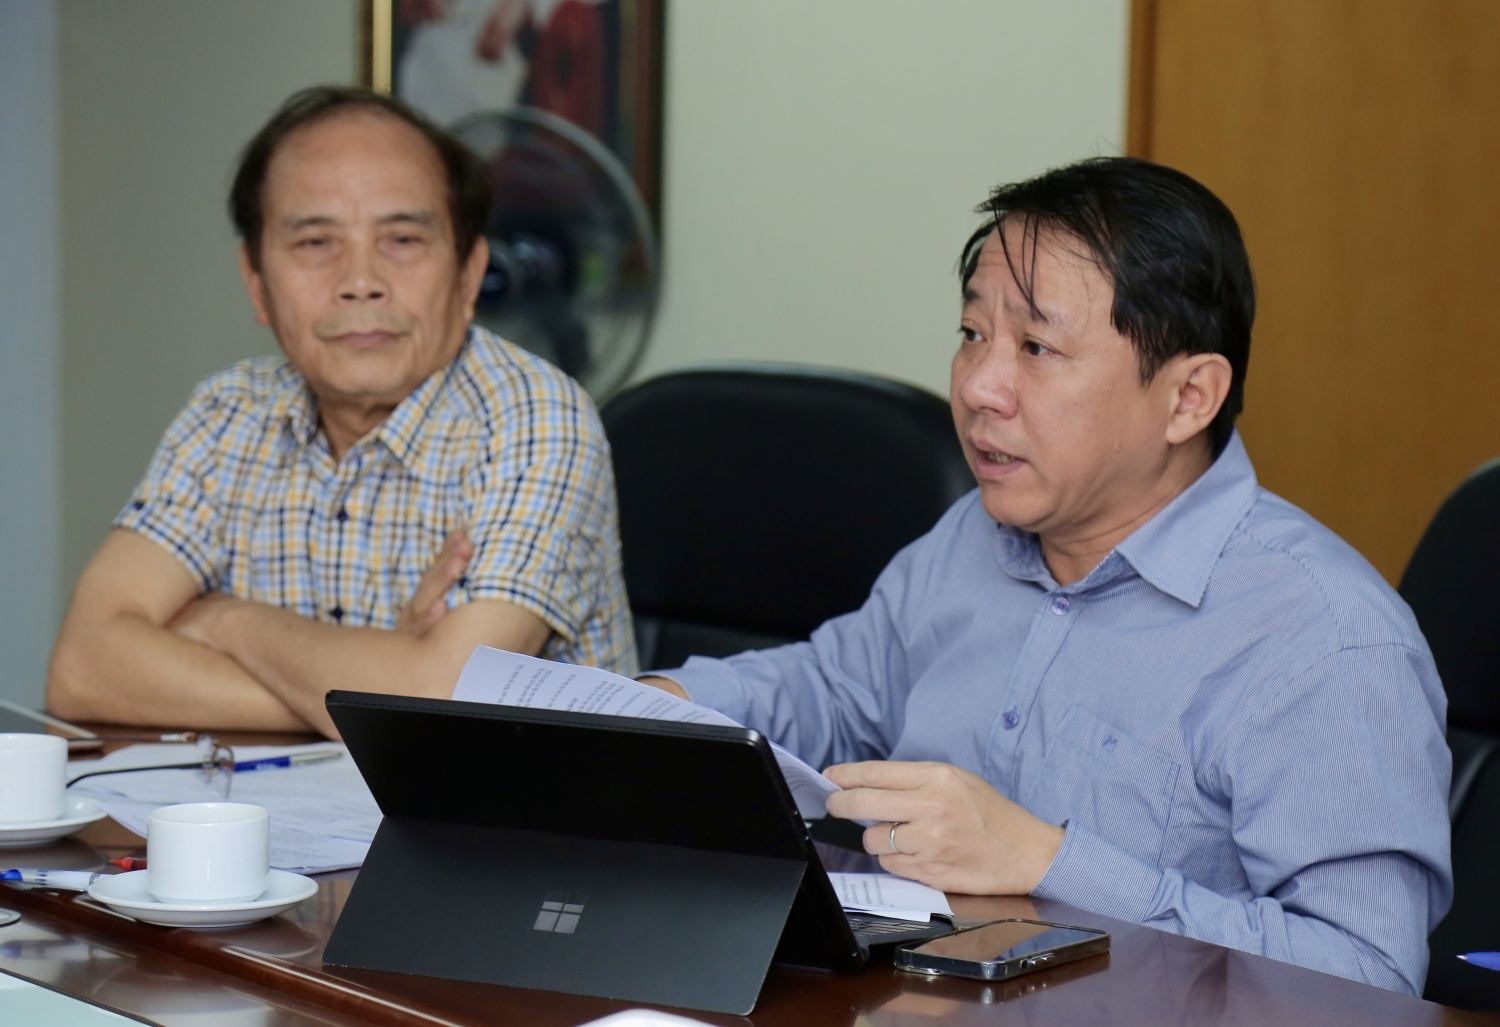 Hội Dầu khí Việt Nam đóng góp ý kiến sửa đổi các thông tư liên quan đến hoạt động dầu khí tại Việt Nam